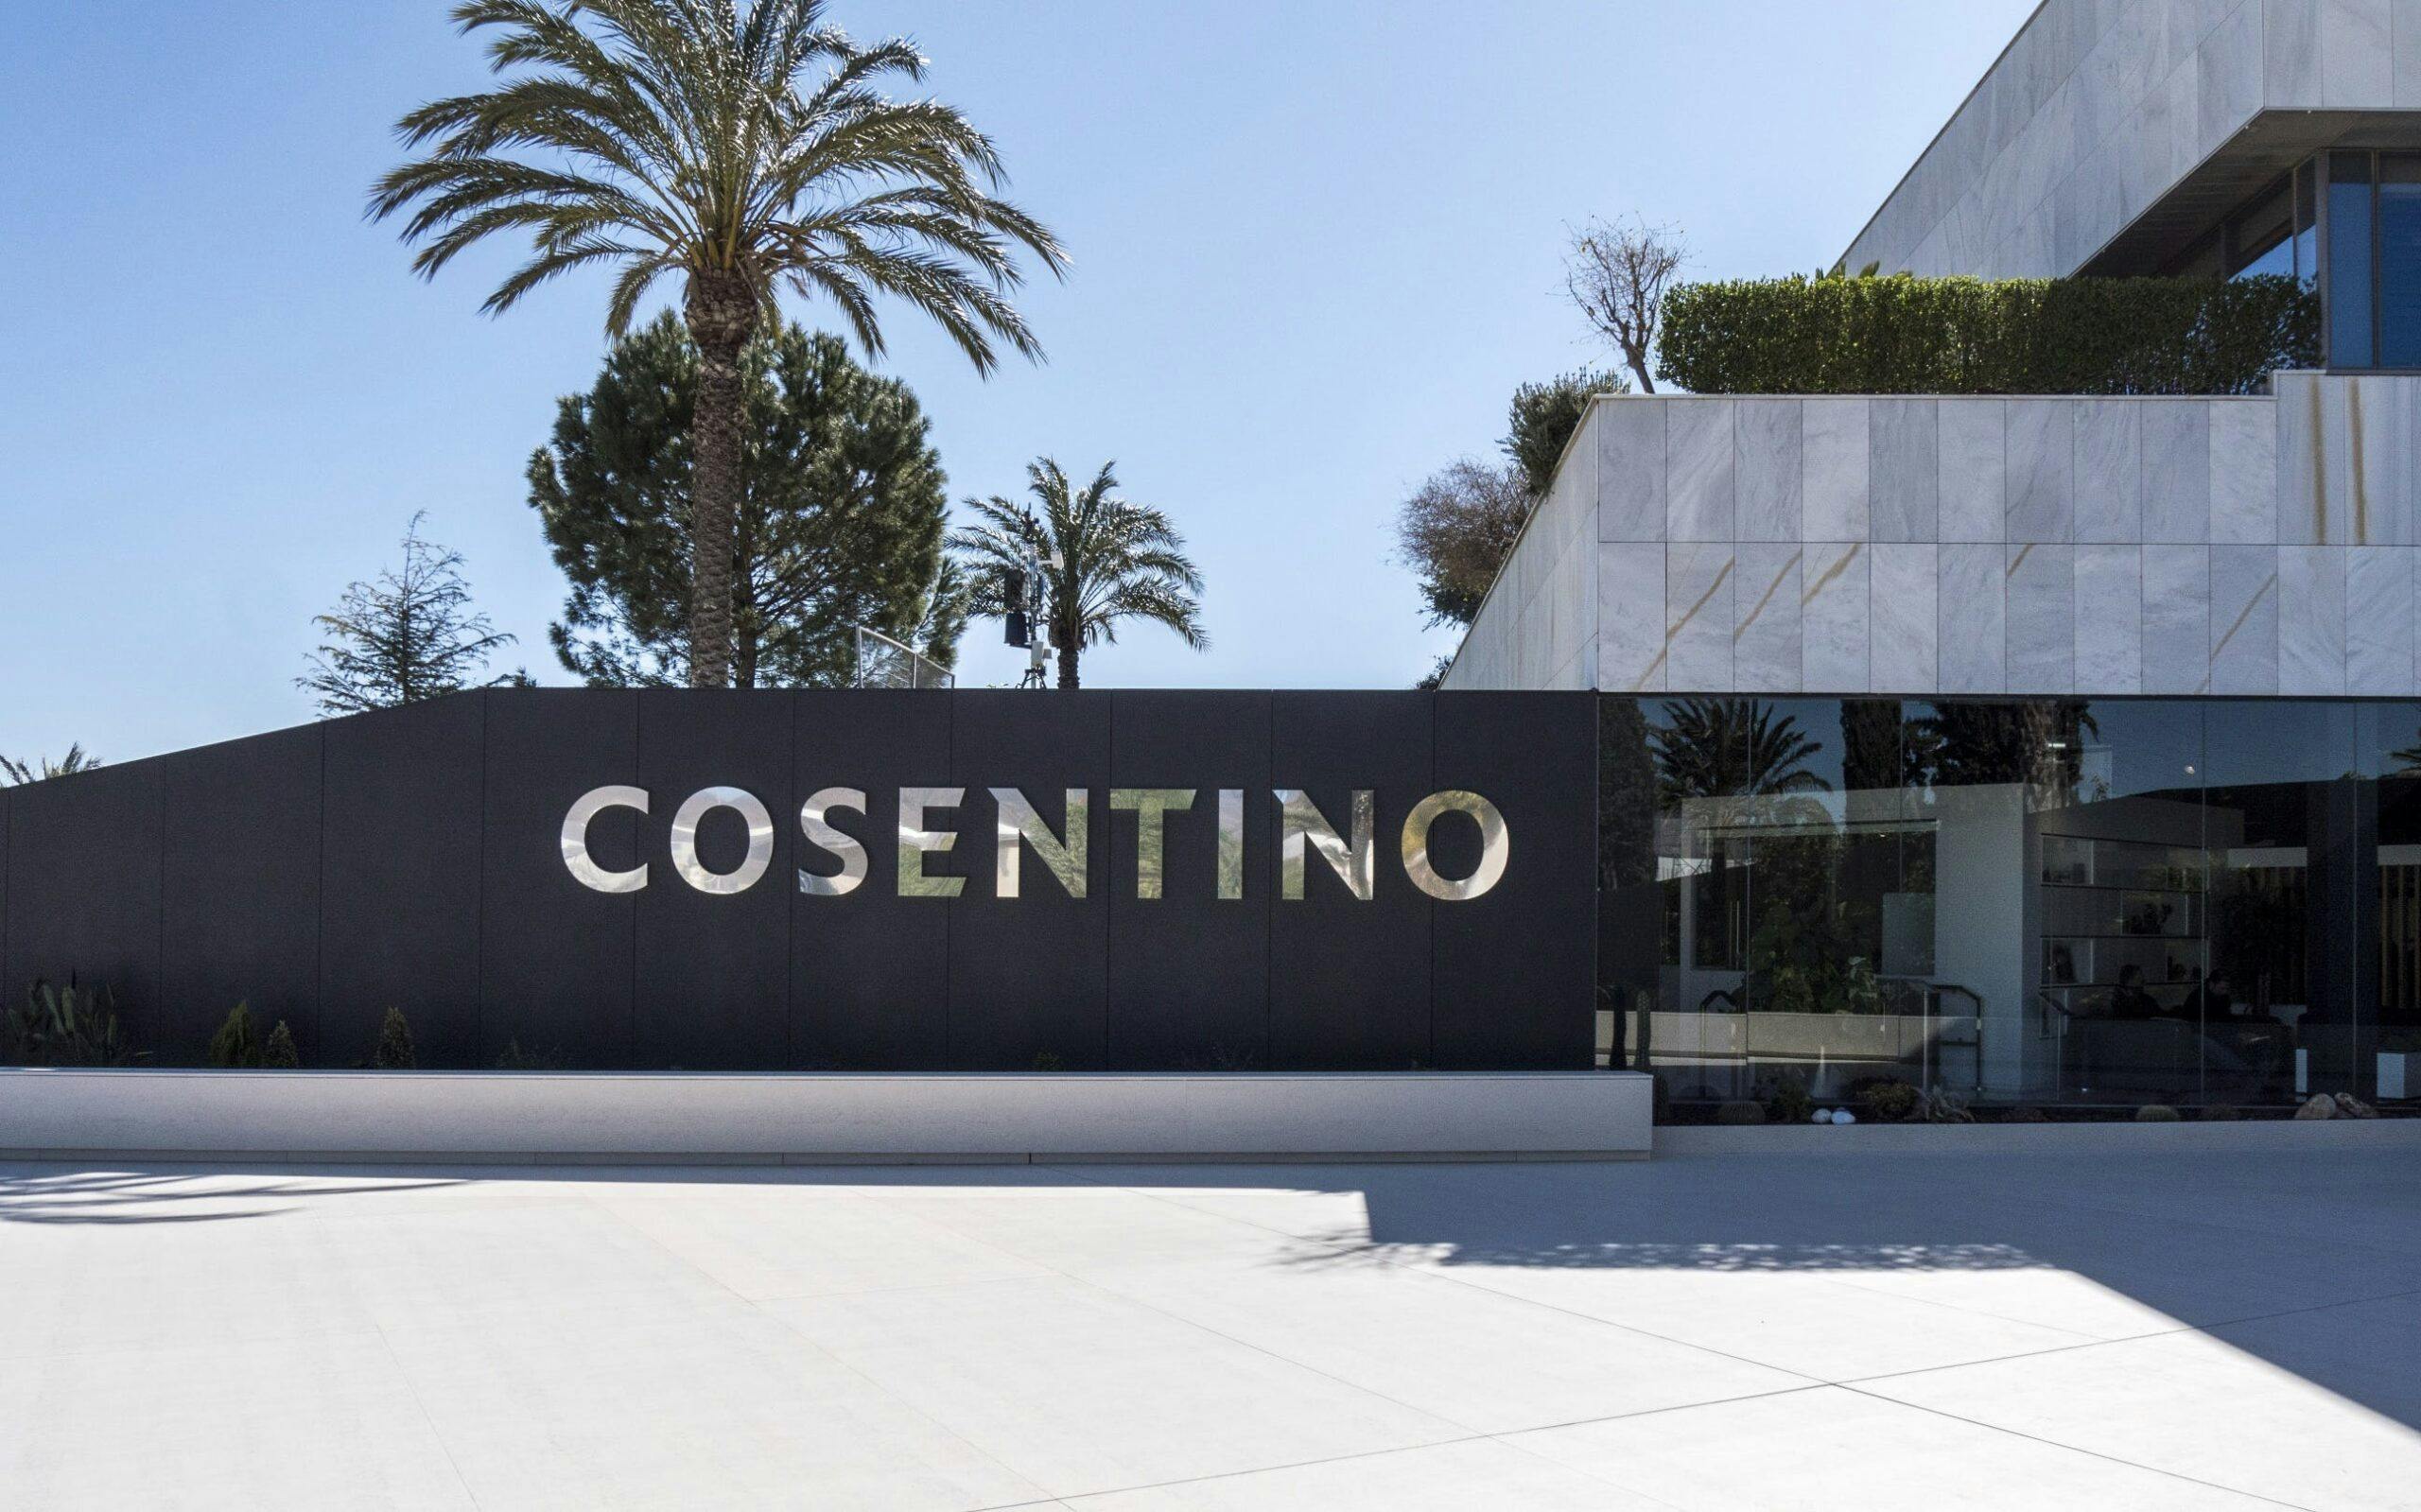 Image 33 of Entrada HQ Cosentino 1 2 3 scaled in Cosentino Group reaches Euro 984.5 million turnover in 2018 - Cosentino